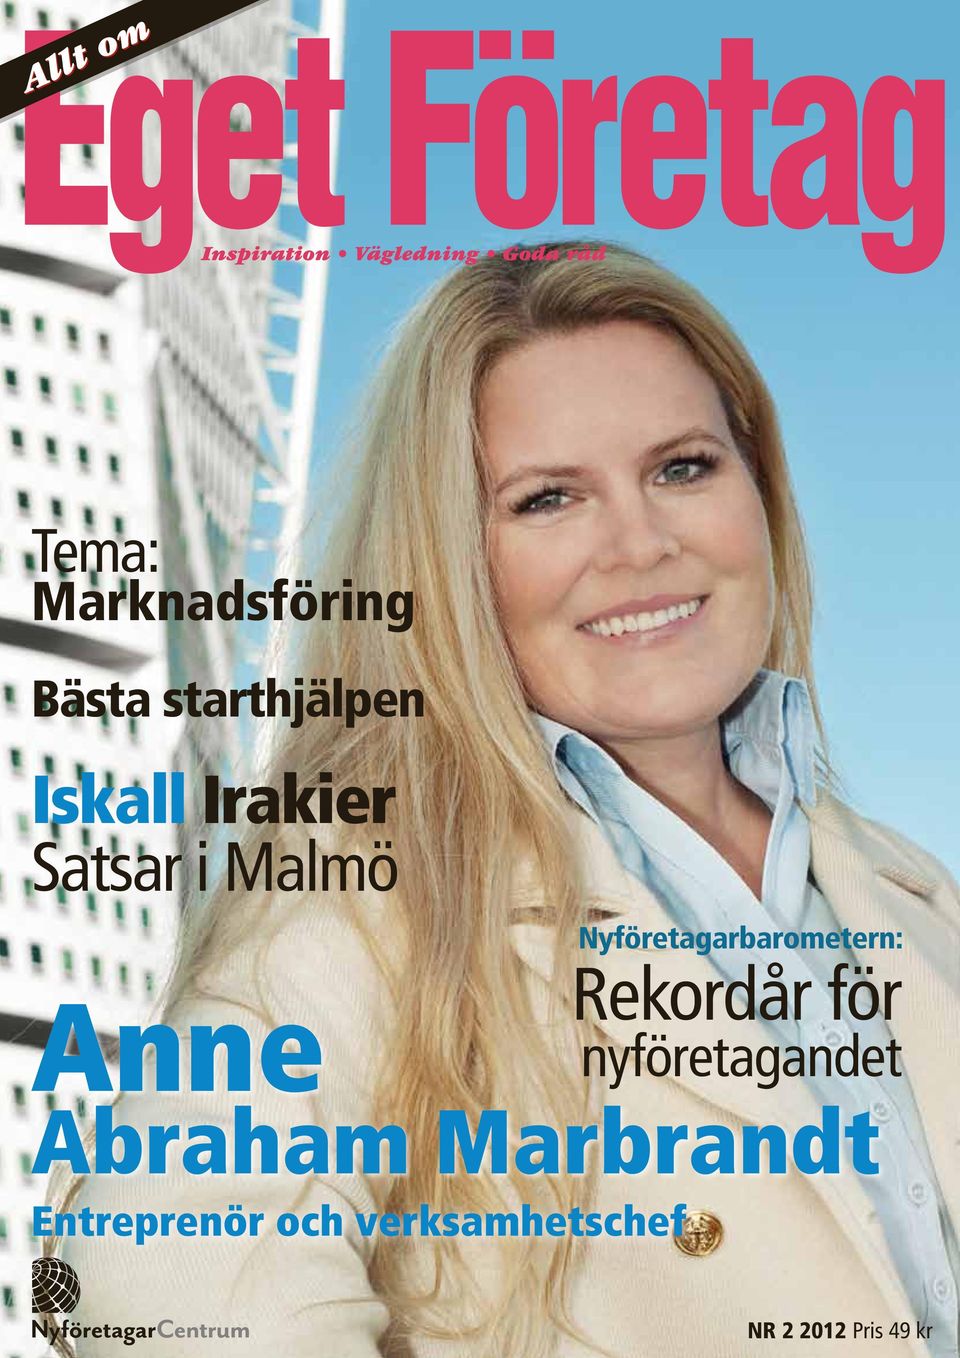 Rekordår för nyföretagandet Anne Abraham Marbrandt